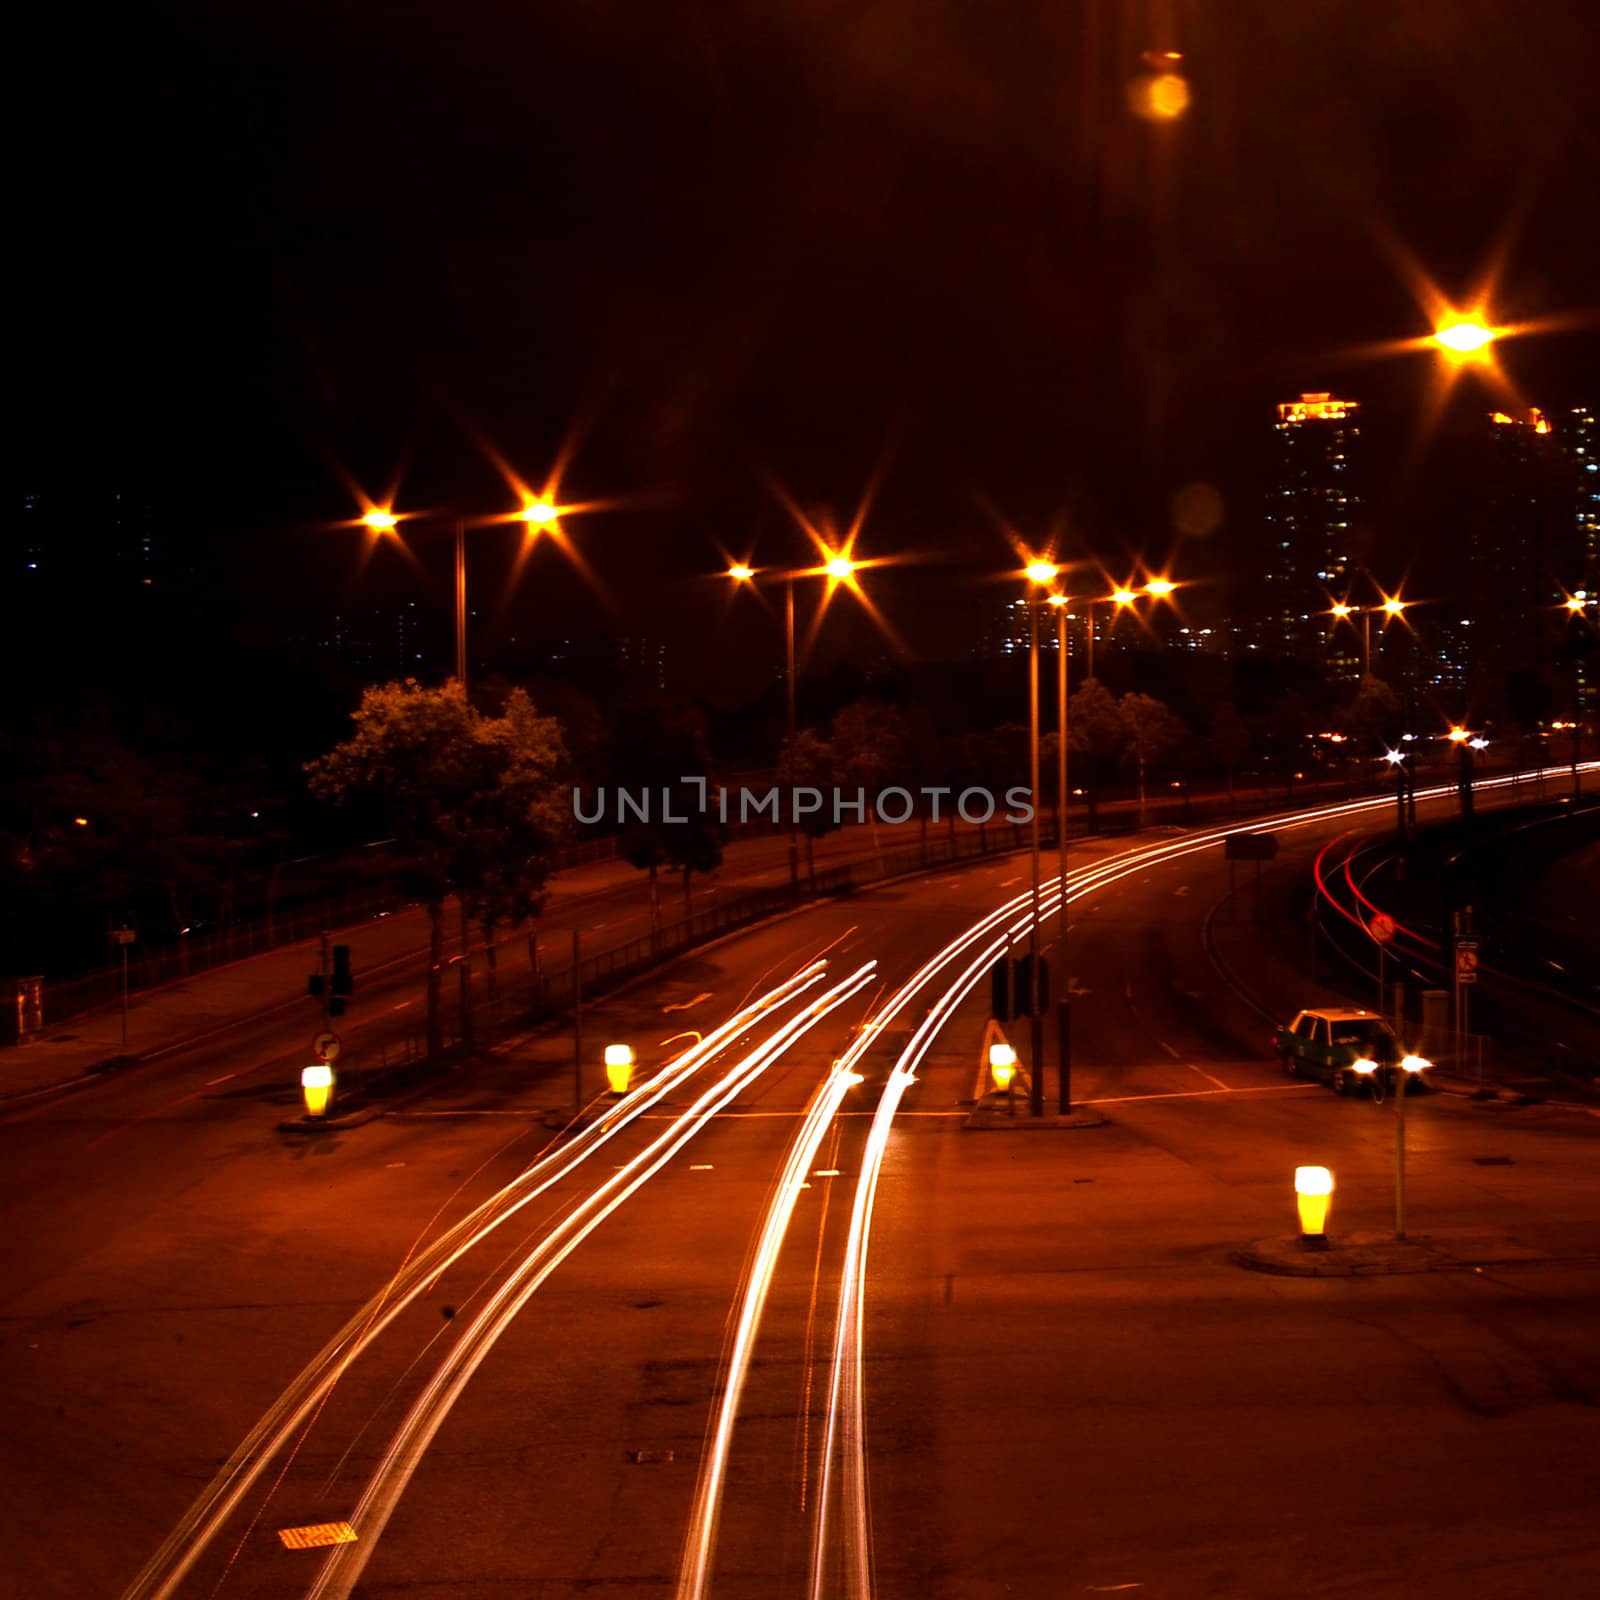 Traffic in Hong Kong at night by kawing921